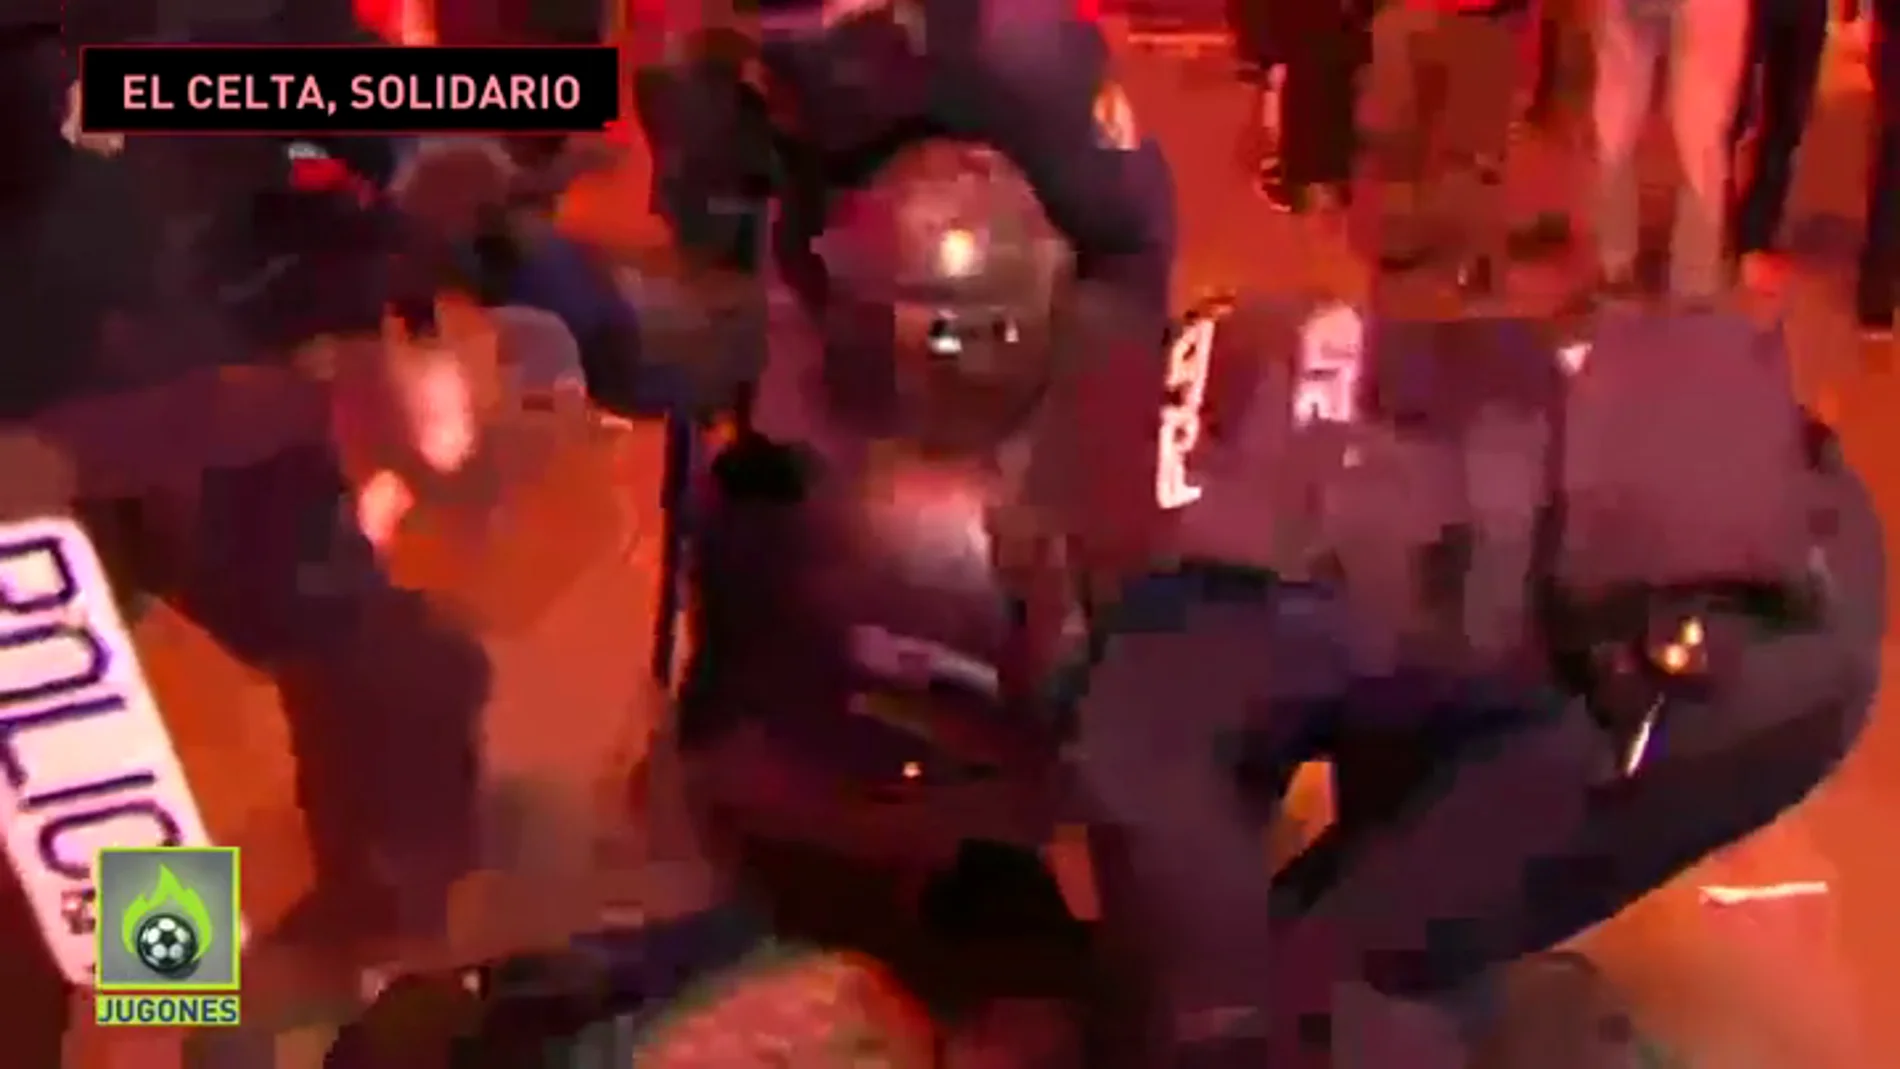 El mensaje de apoyo del Celta al Policía gravemente herido en los disturbios de Barcelona